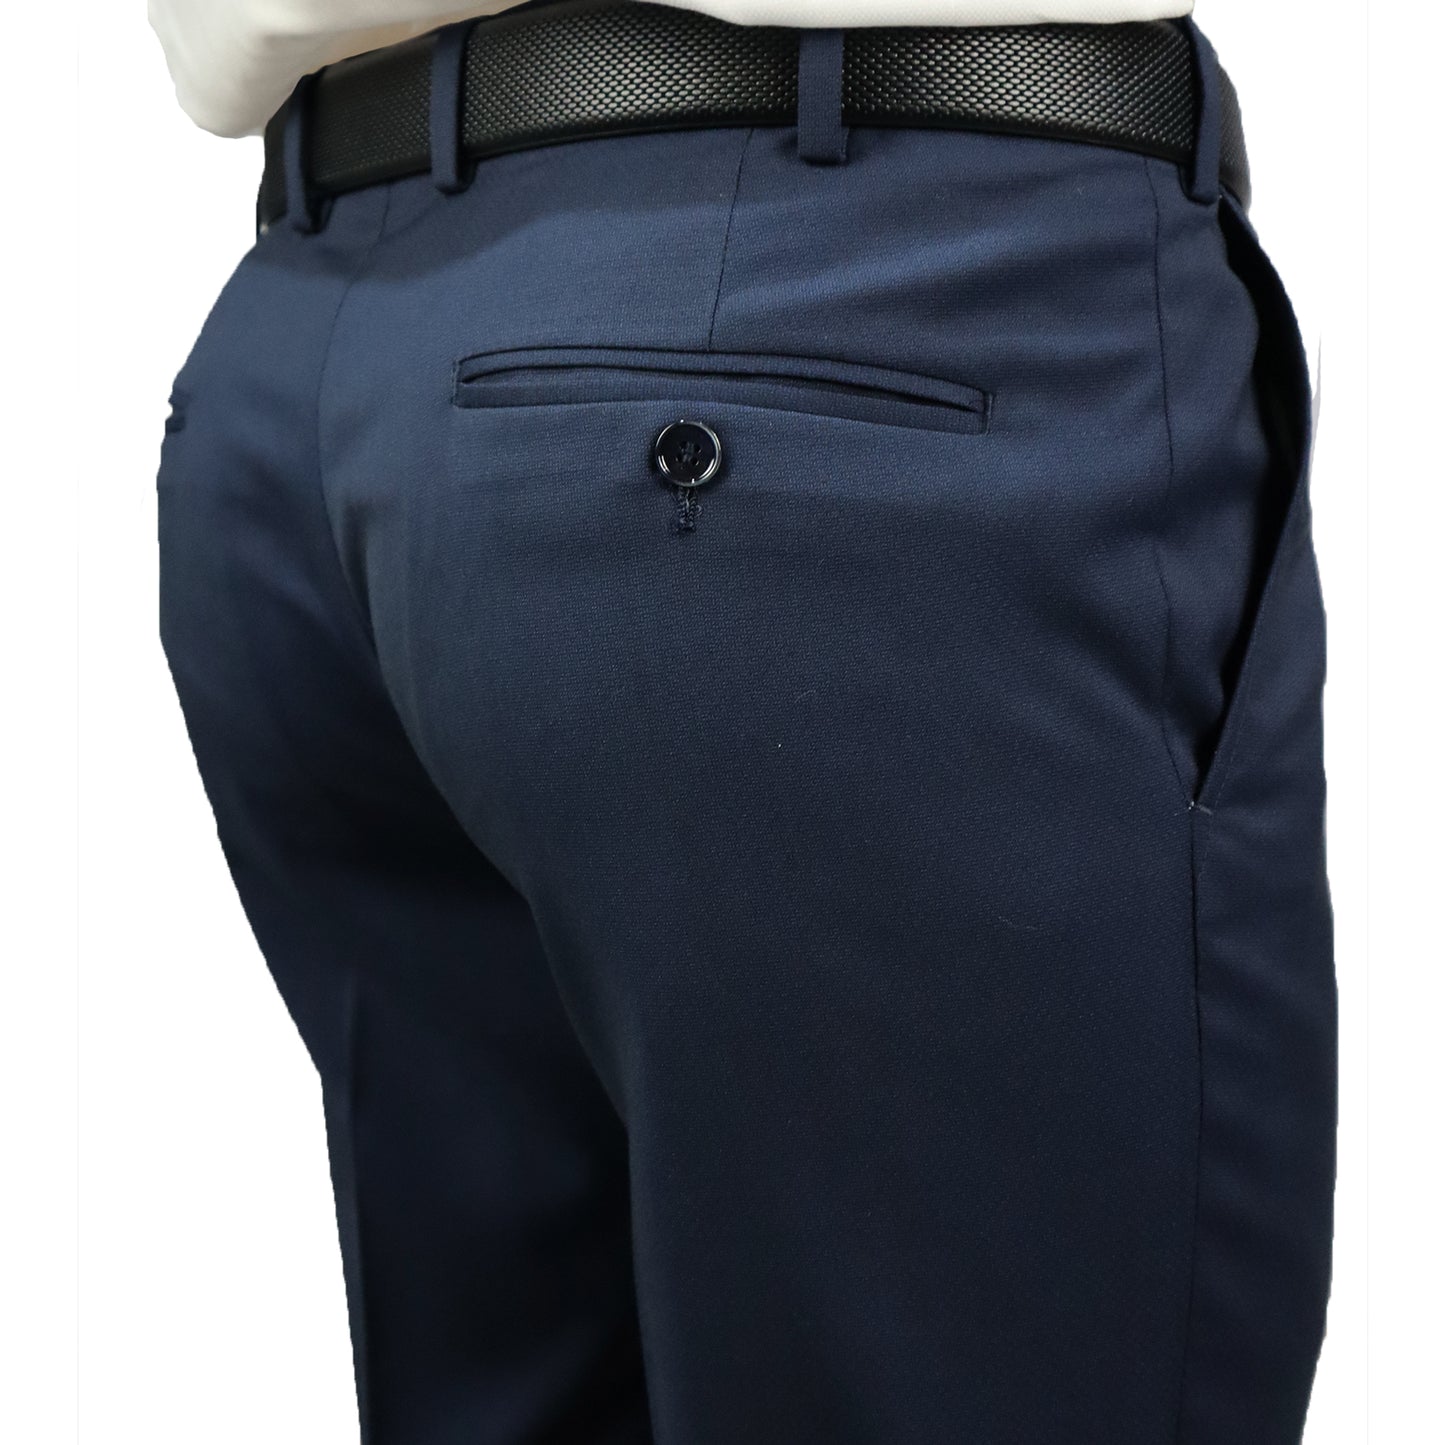 Κοστούμι Ανδρικό Μπλε Τερυλέν (Tery/Rayon/Spandex) Semi-Slim Fit 502627 1-NAVY